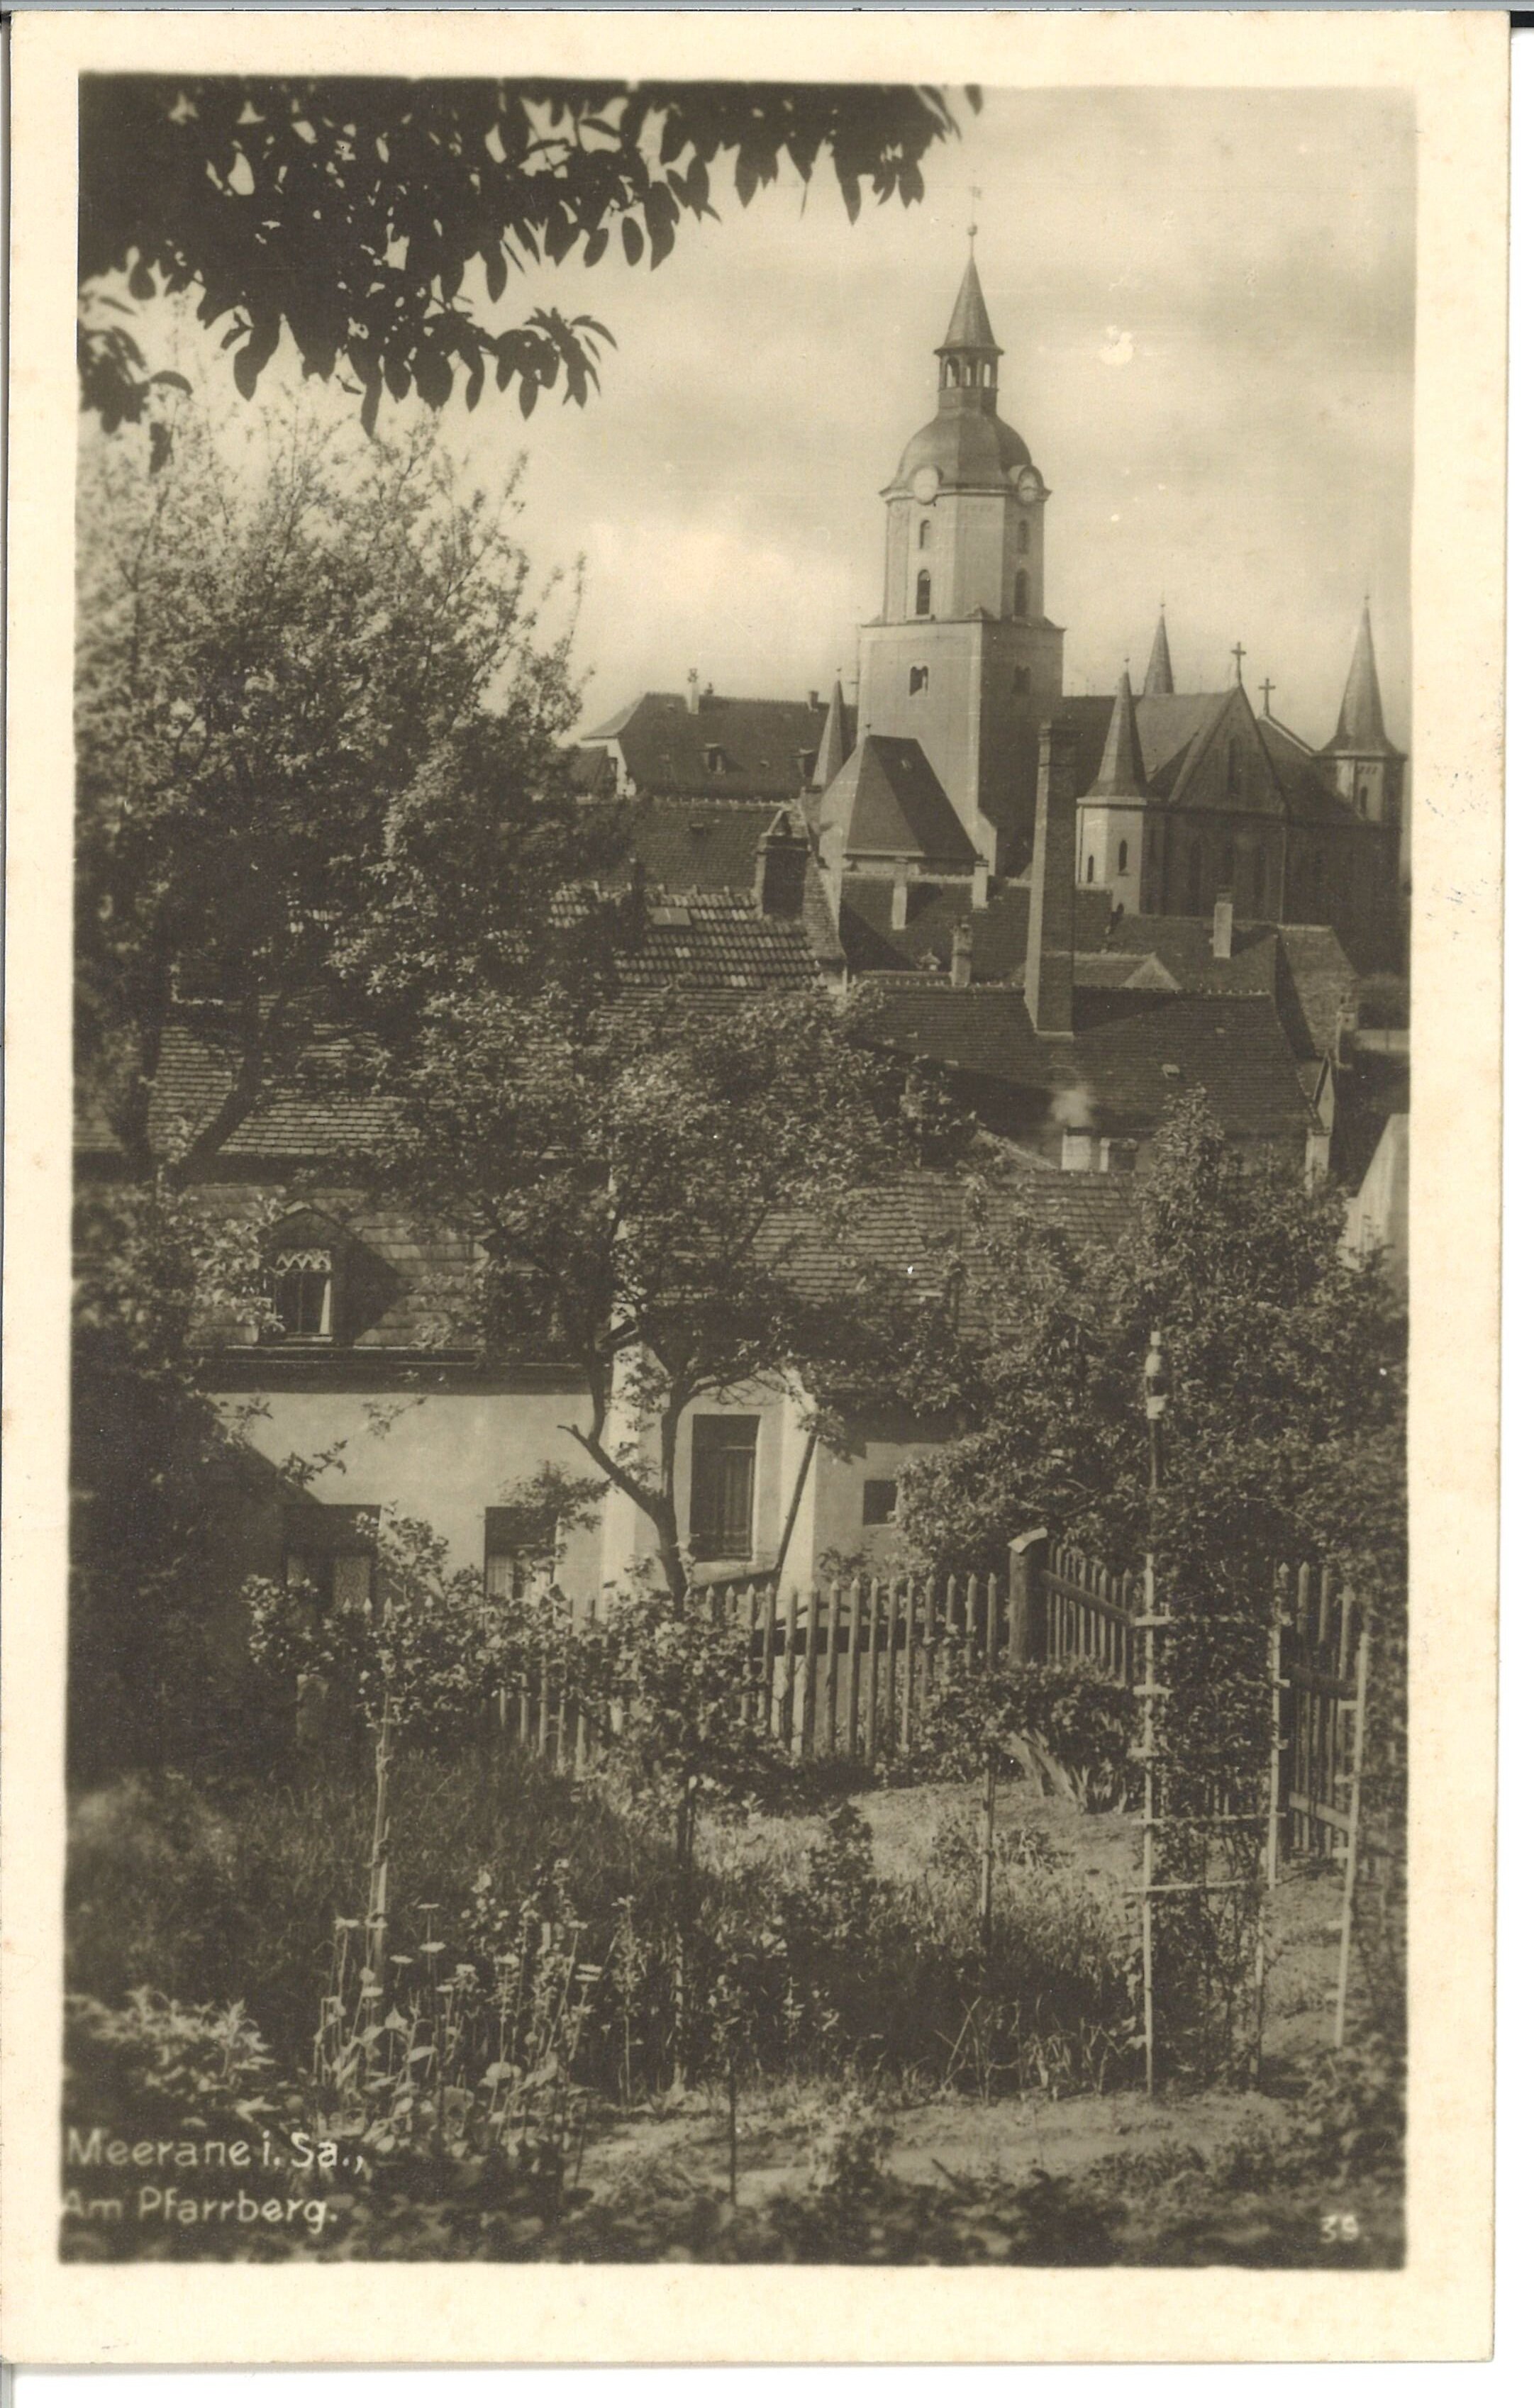 "Gondelteich am KWU-Sommerbad Meerane/Sa." (Postkarte) (Museum Meerane CC BY-NC-SA)